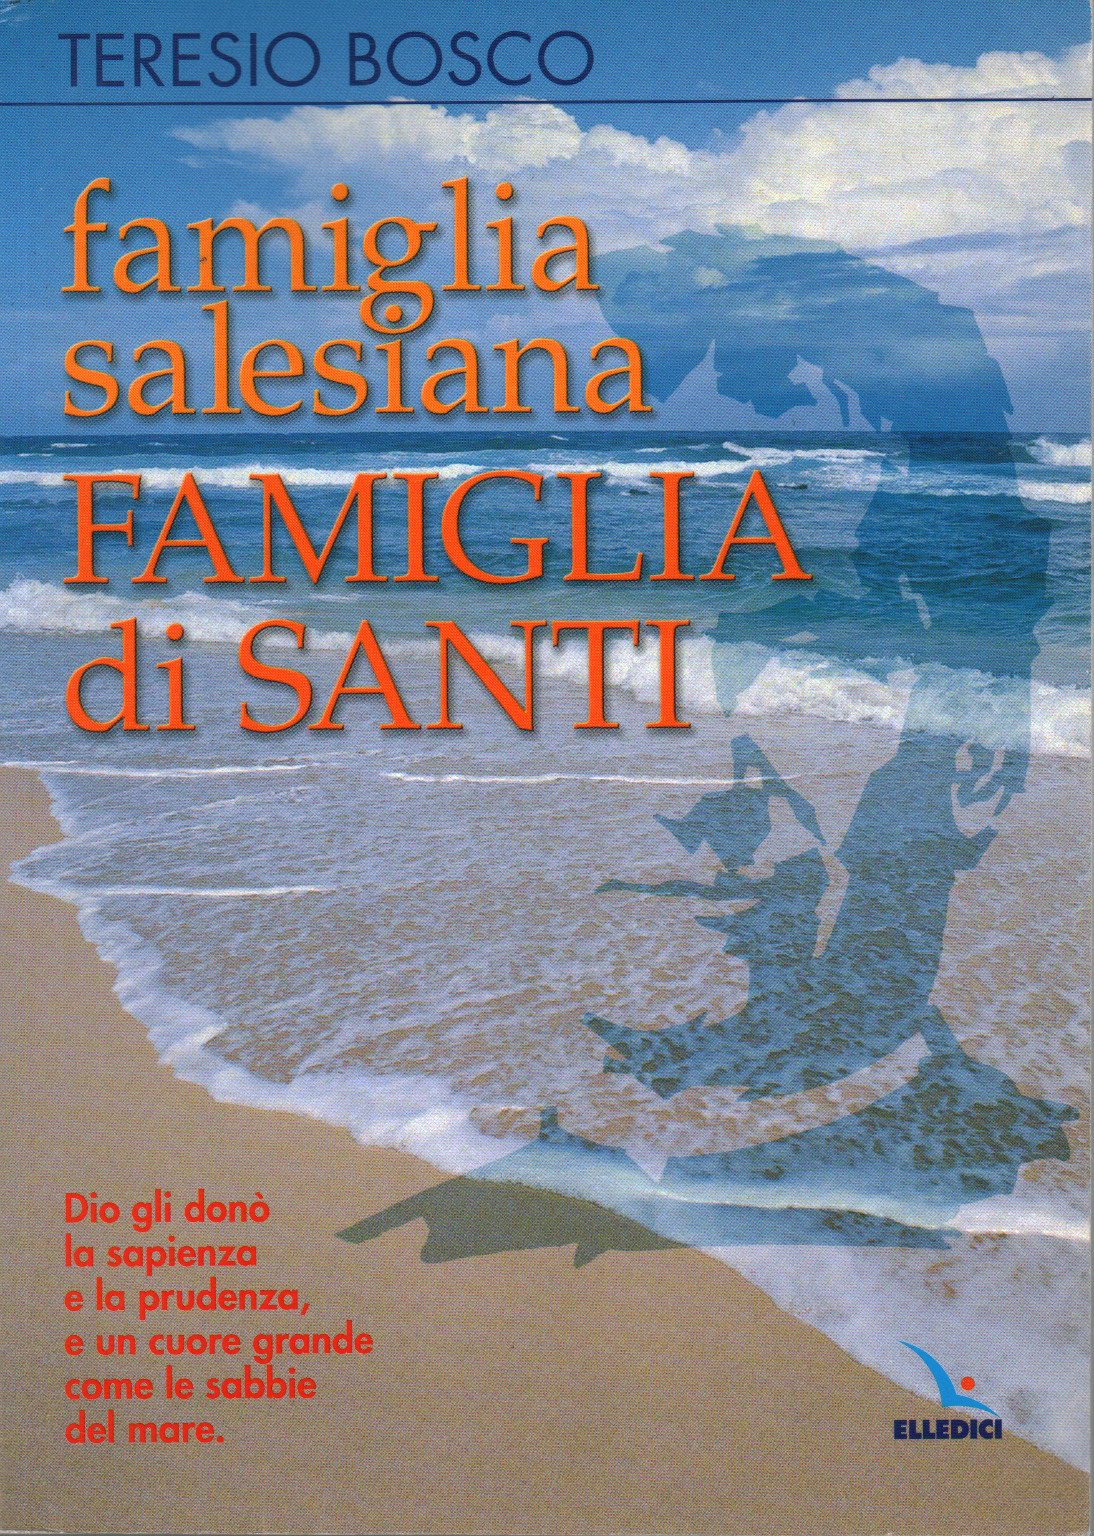 Famiglia Salesiana famiglia di Santi, s.a.